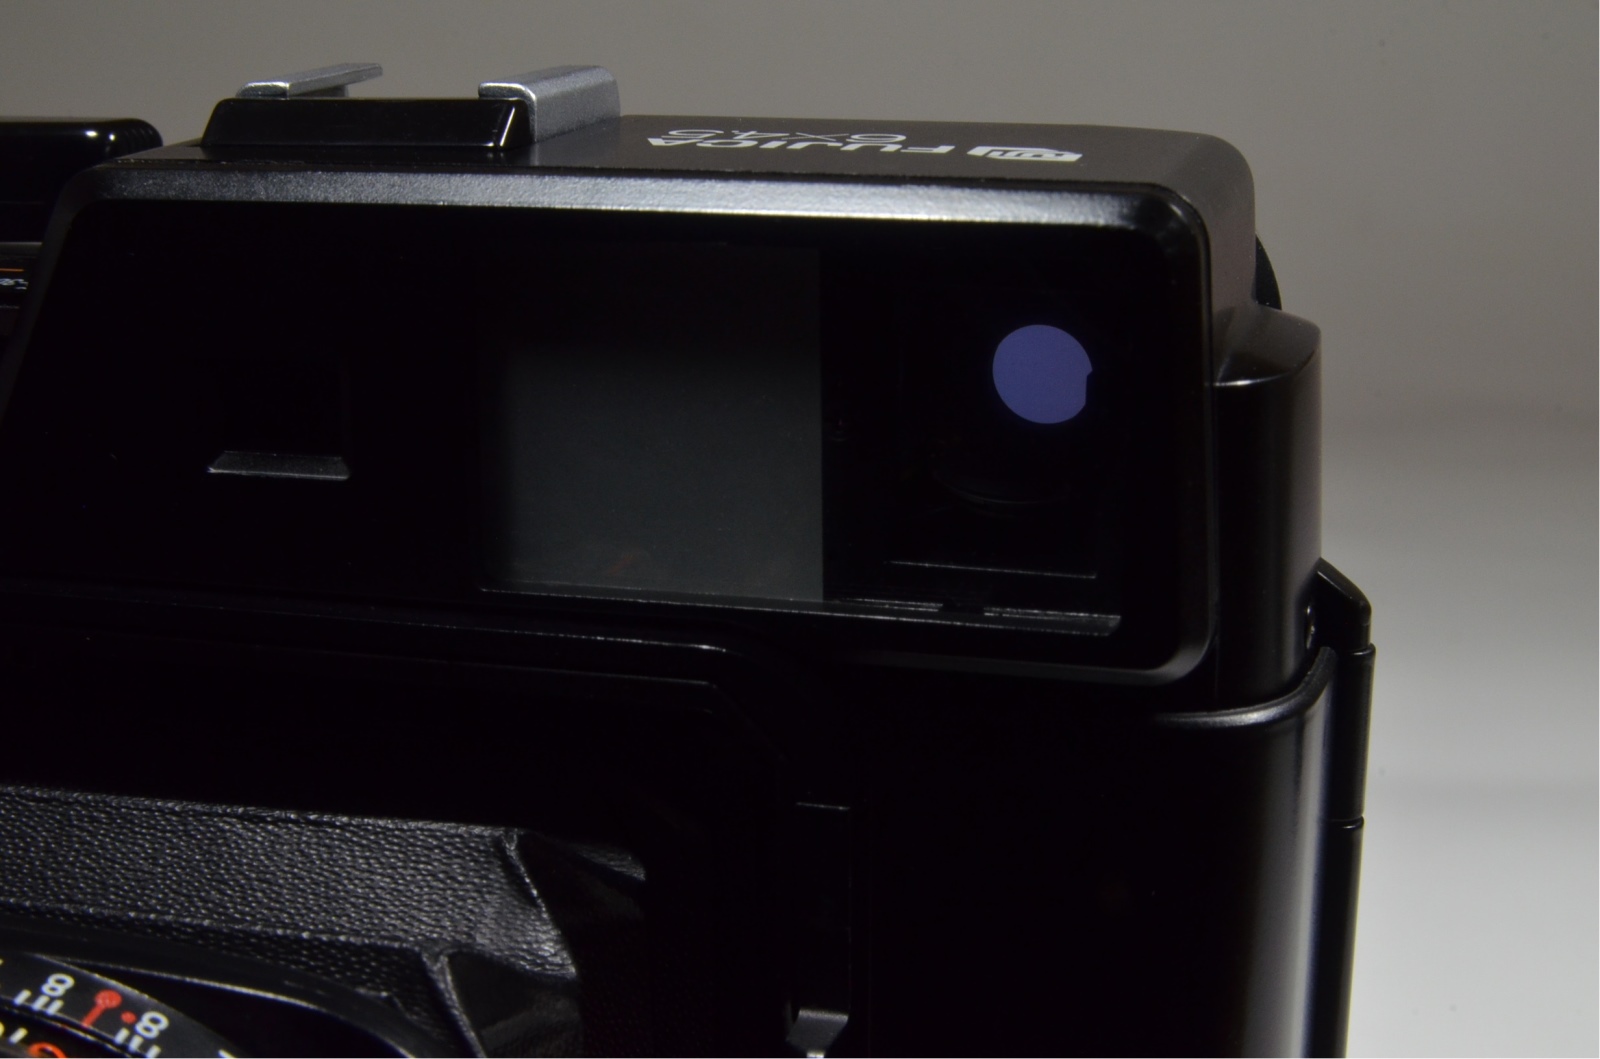 Fujifilm Fujica GS645 Pro Fujinon 75mm f3.4 Medium Format Film Camera #